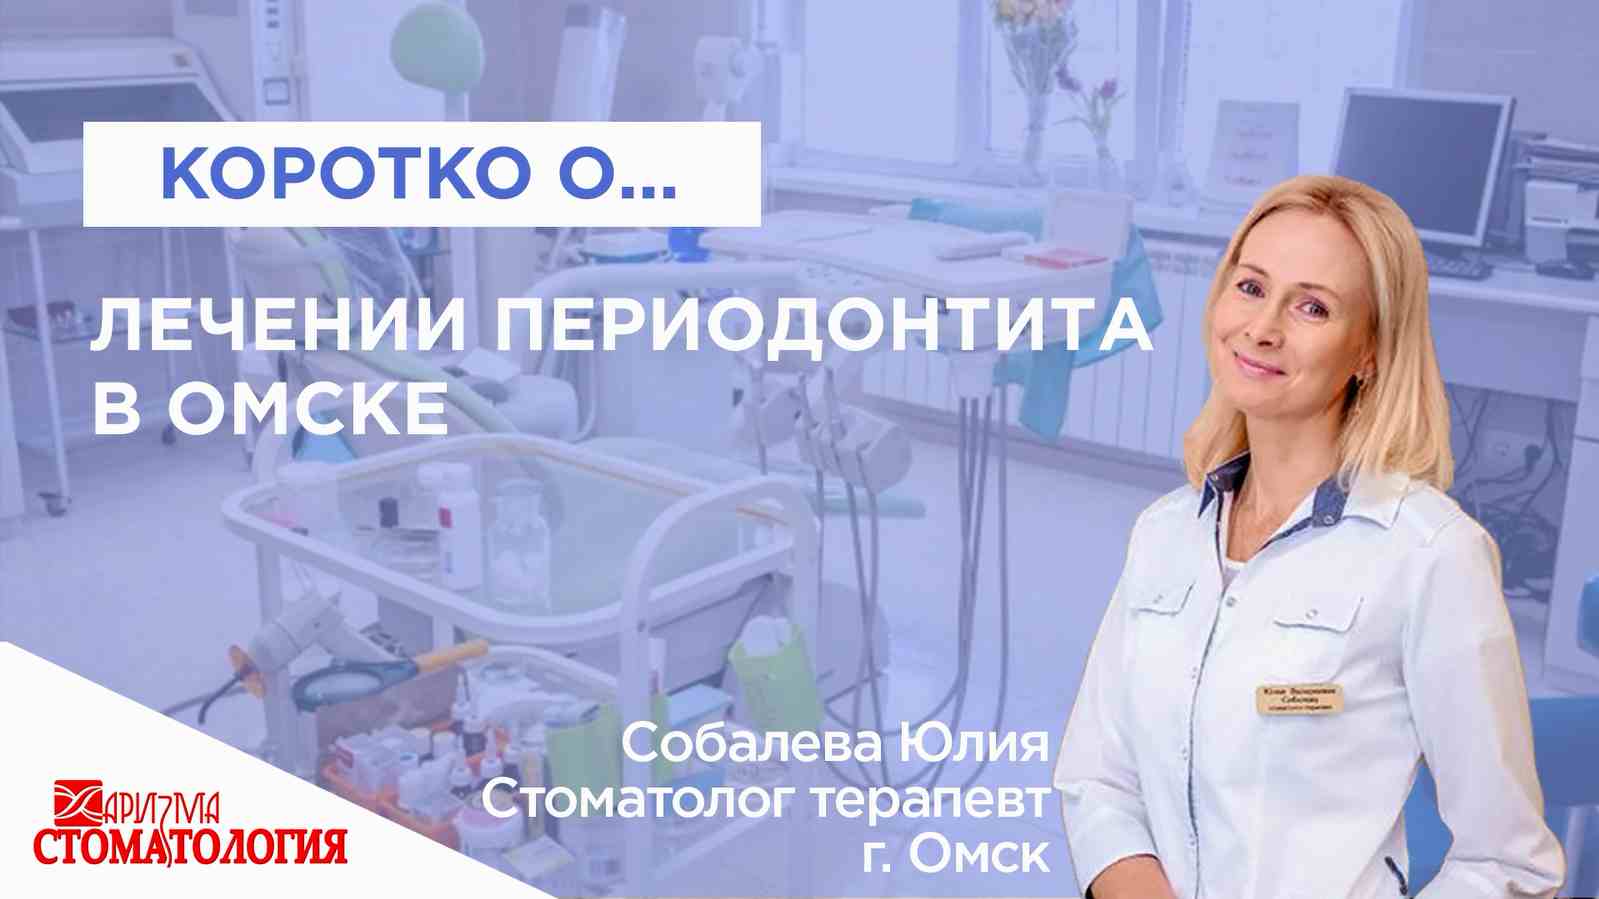 Лечение периодонтита в Омске по доступной цене в клинике Харизма недорого